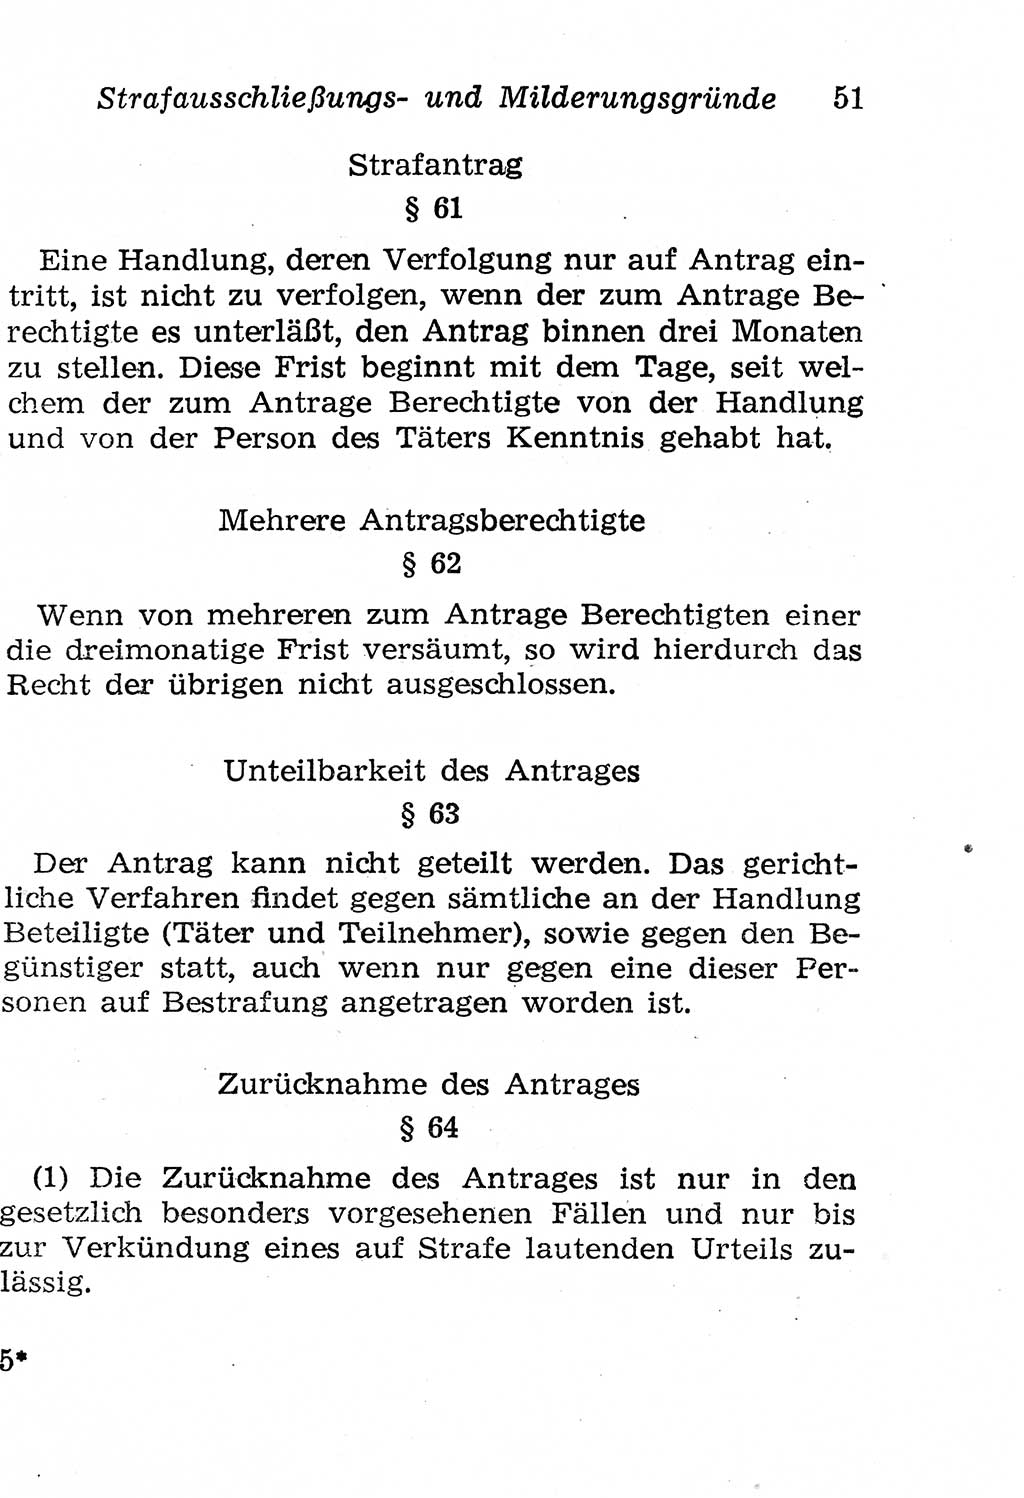 Strafgesetzbuch (StGB) und andere Strafgesetze [Deutsche Demokratische Republik (DDR)] 1958, Seite 51 (StGB Strafges. DDR 1958, S. 51)